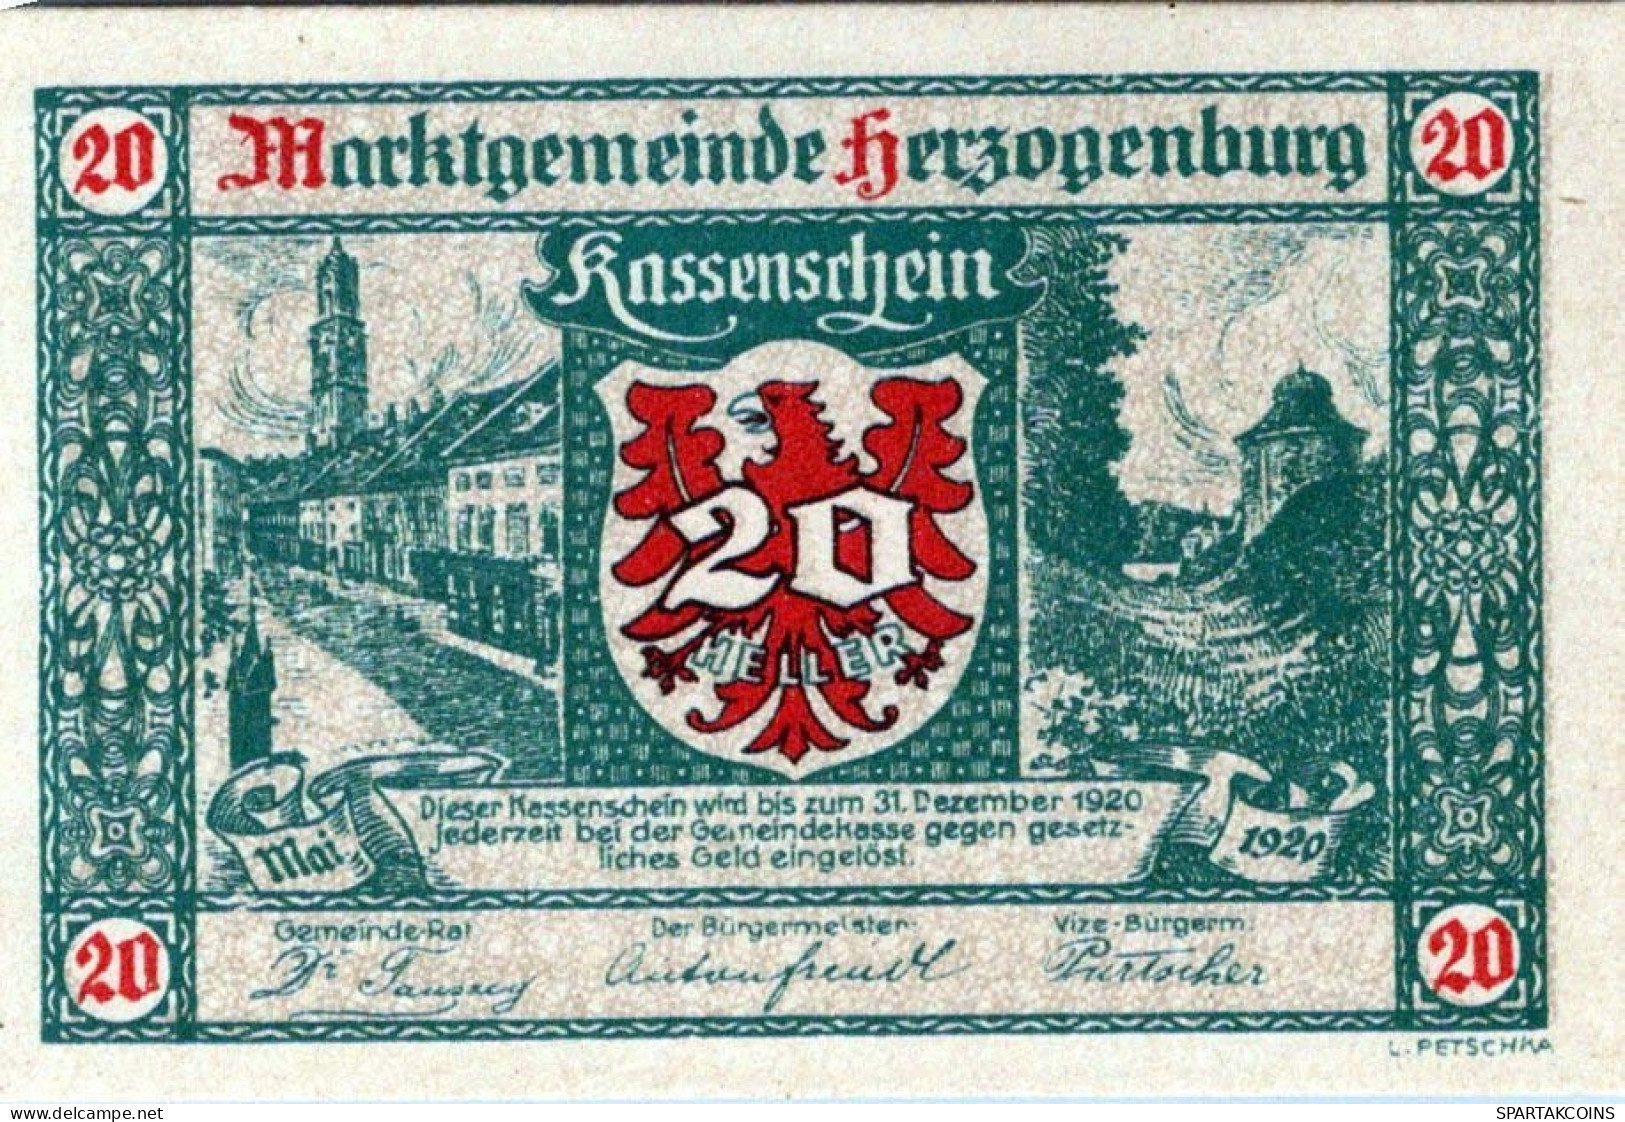 20 HELLER 1920 Stadt HERZOGENBURG Niedrigeren Österreich Notgeld Papiergeld Banknote #PG587 - [11] Local Banknote Issues